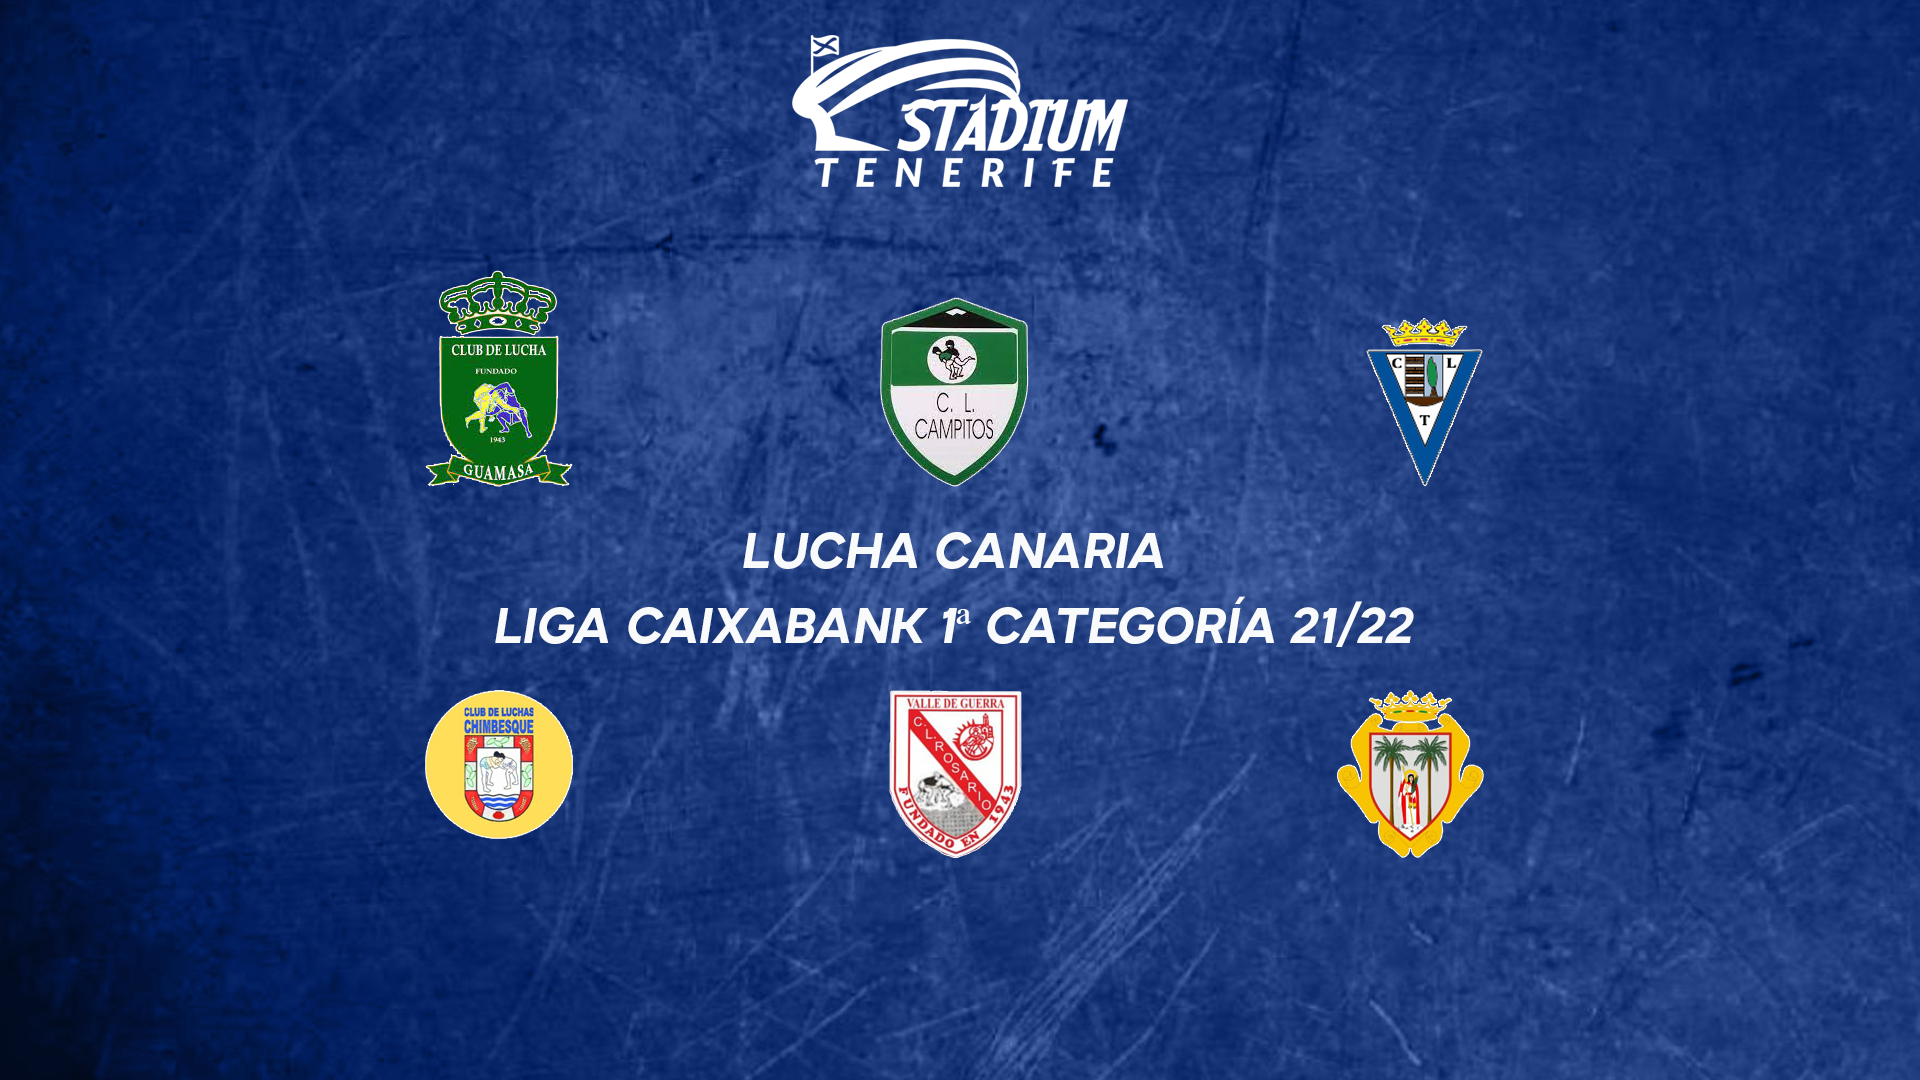 PREVIA | 7ª Jornada de la Liga CaixaBank de Lucha Canaria (18-19-20 de febrero)